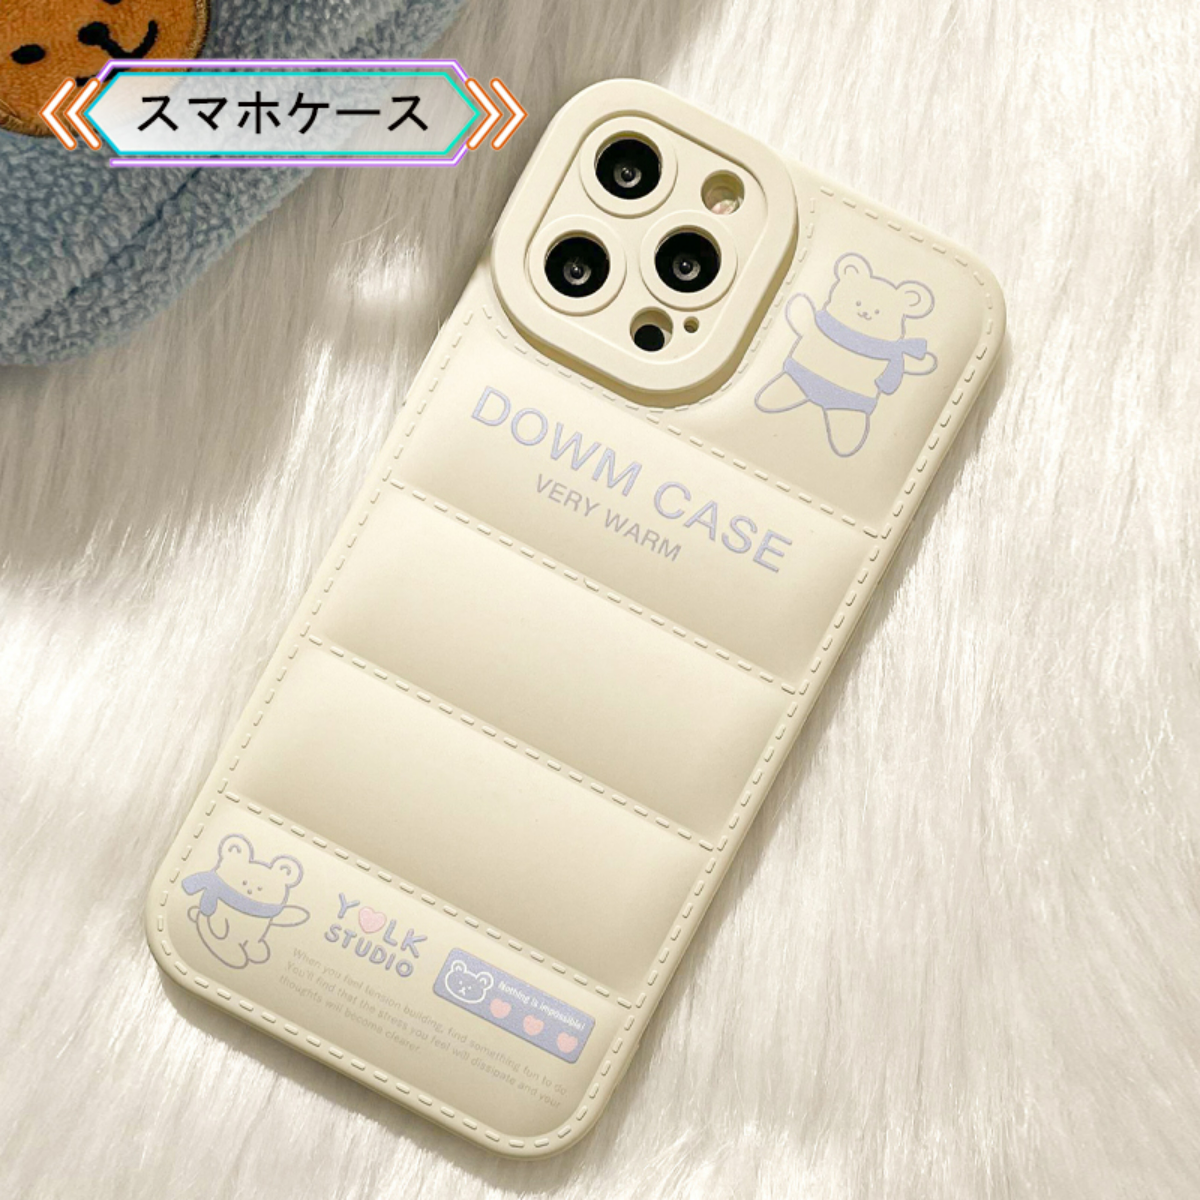 ダウンジャケット調のiPhoneケース｜白のダウンに薄いパープルのクマちゃんと英字で飾った模様はあっさりしている感じでかわいい